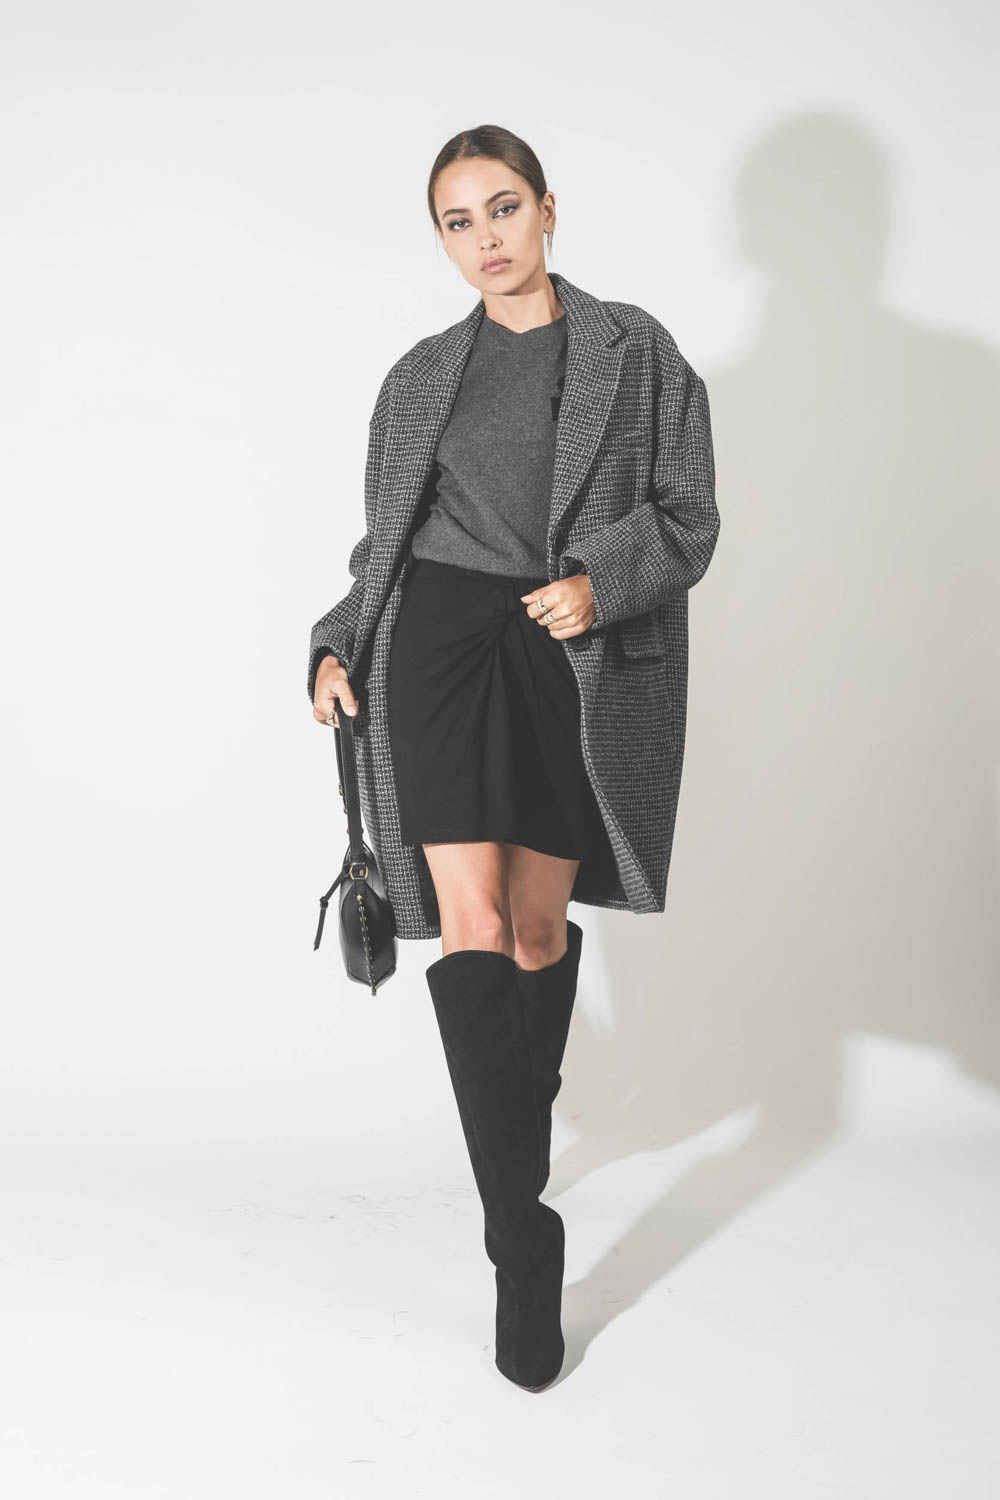 Manteau en laine pied de poule noir et gris Limiza Marant Etoile. Porté avec une mini-jupe drapée.